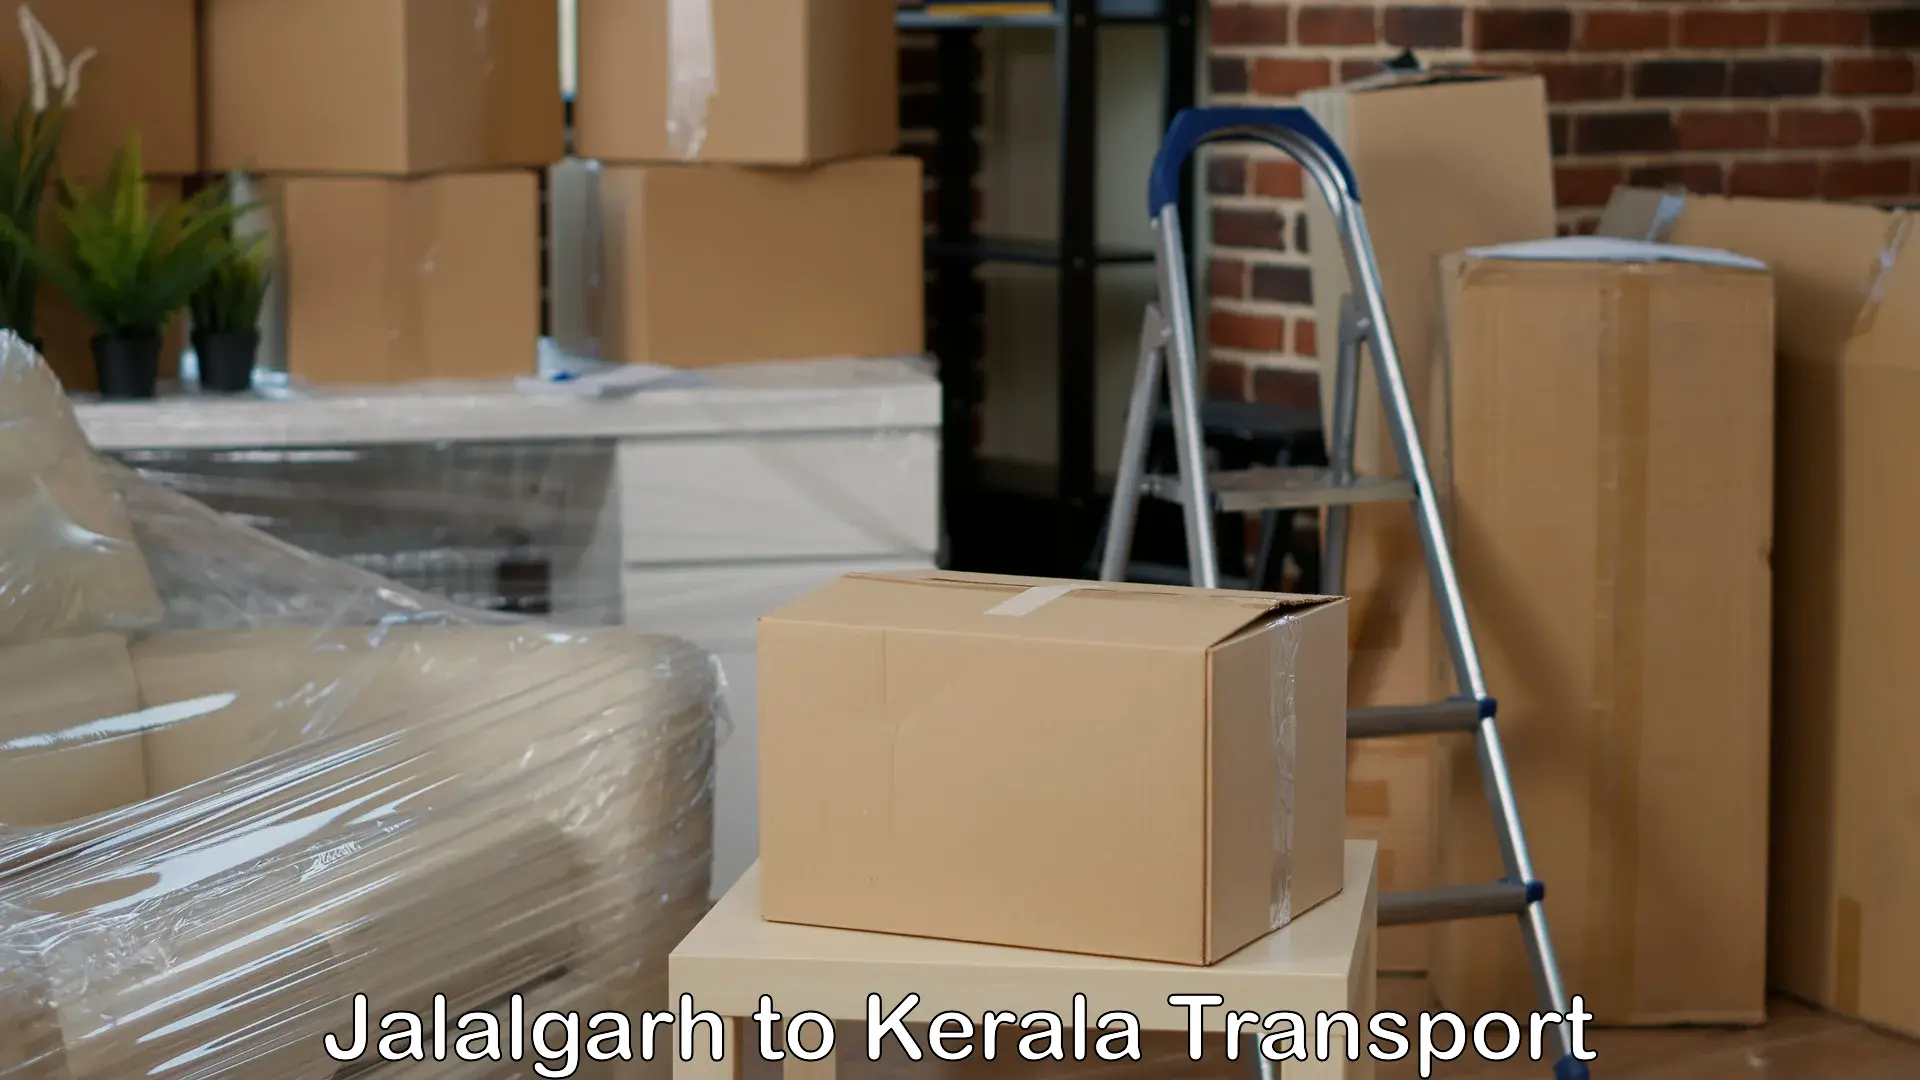 Furniture transport service Jalalgarh to Karukachal